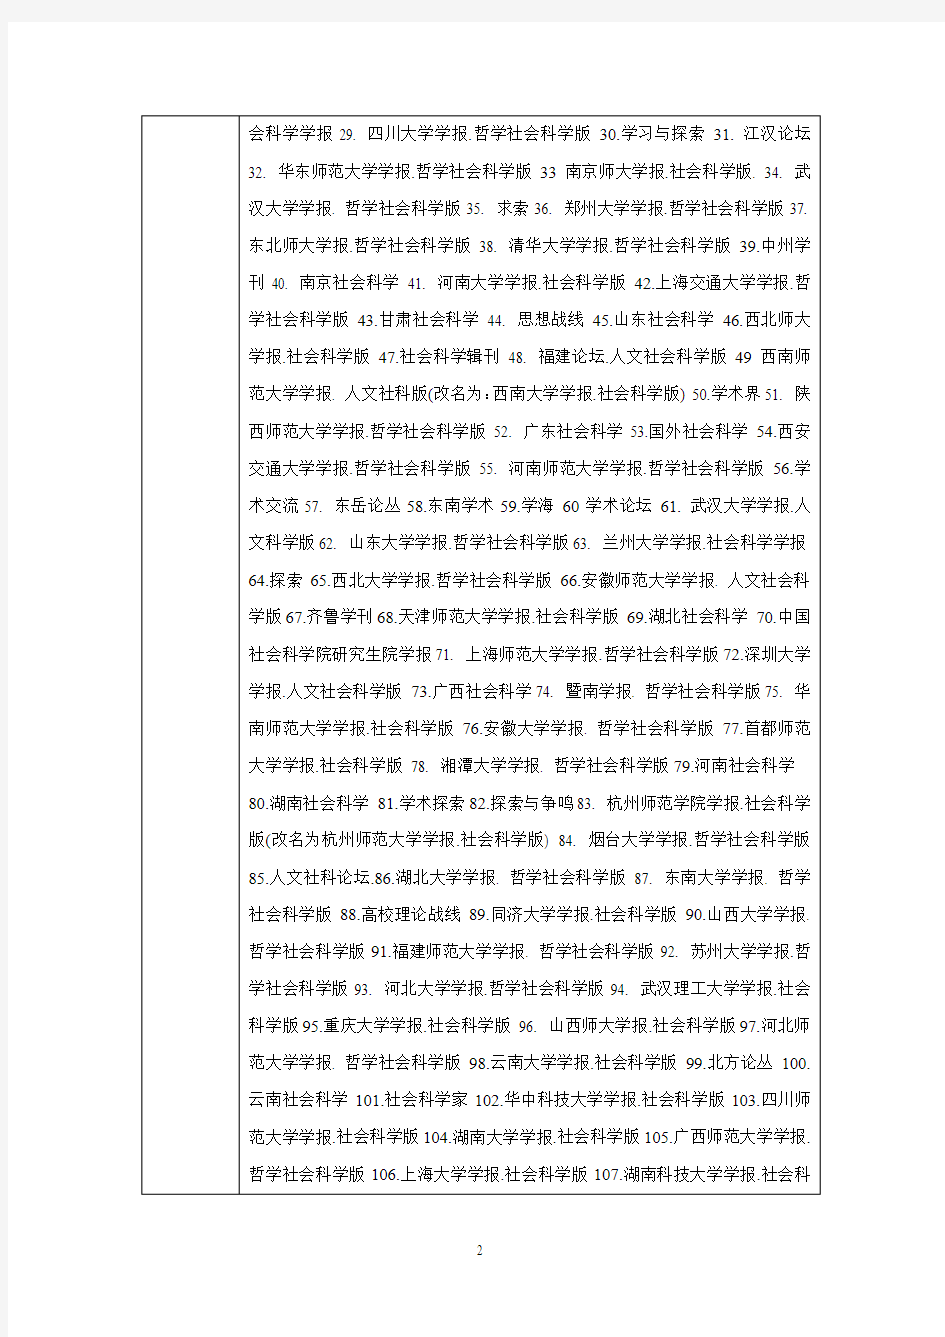 2011年版本《中文核心期刊目录》(发表研究论文投稿指南、评价学术论文的基本标准)